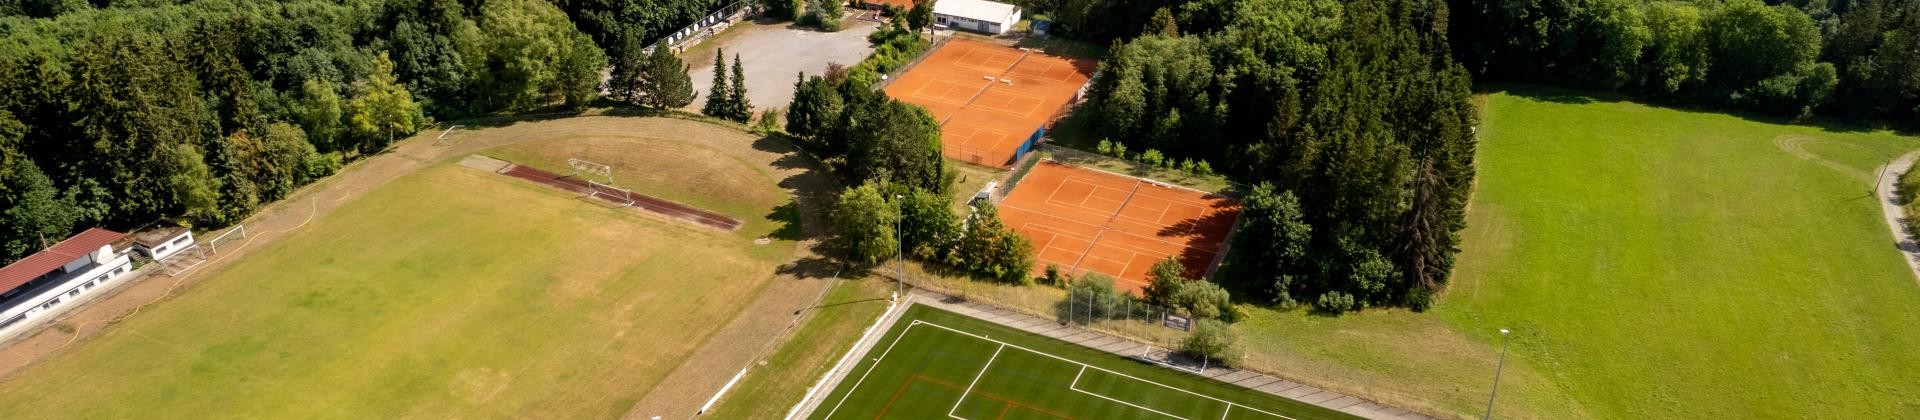 Luftbildaufnahme, zeigt Sportplatz und Tennisplatz der Gemeinde.